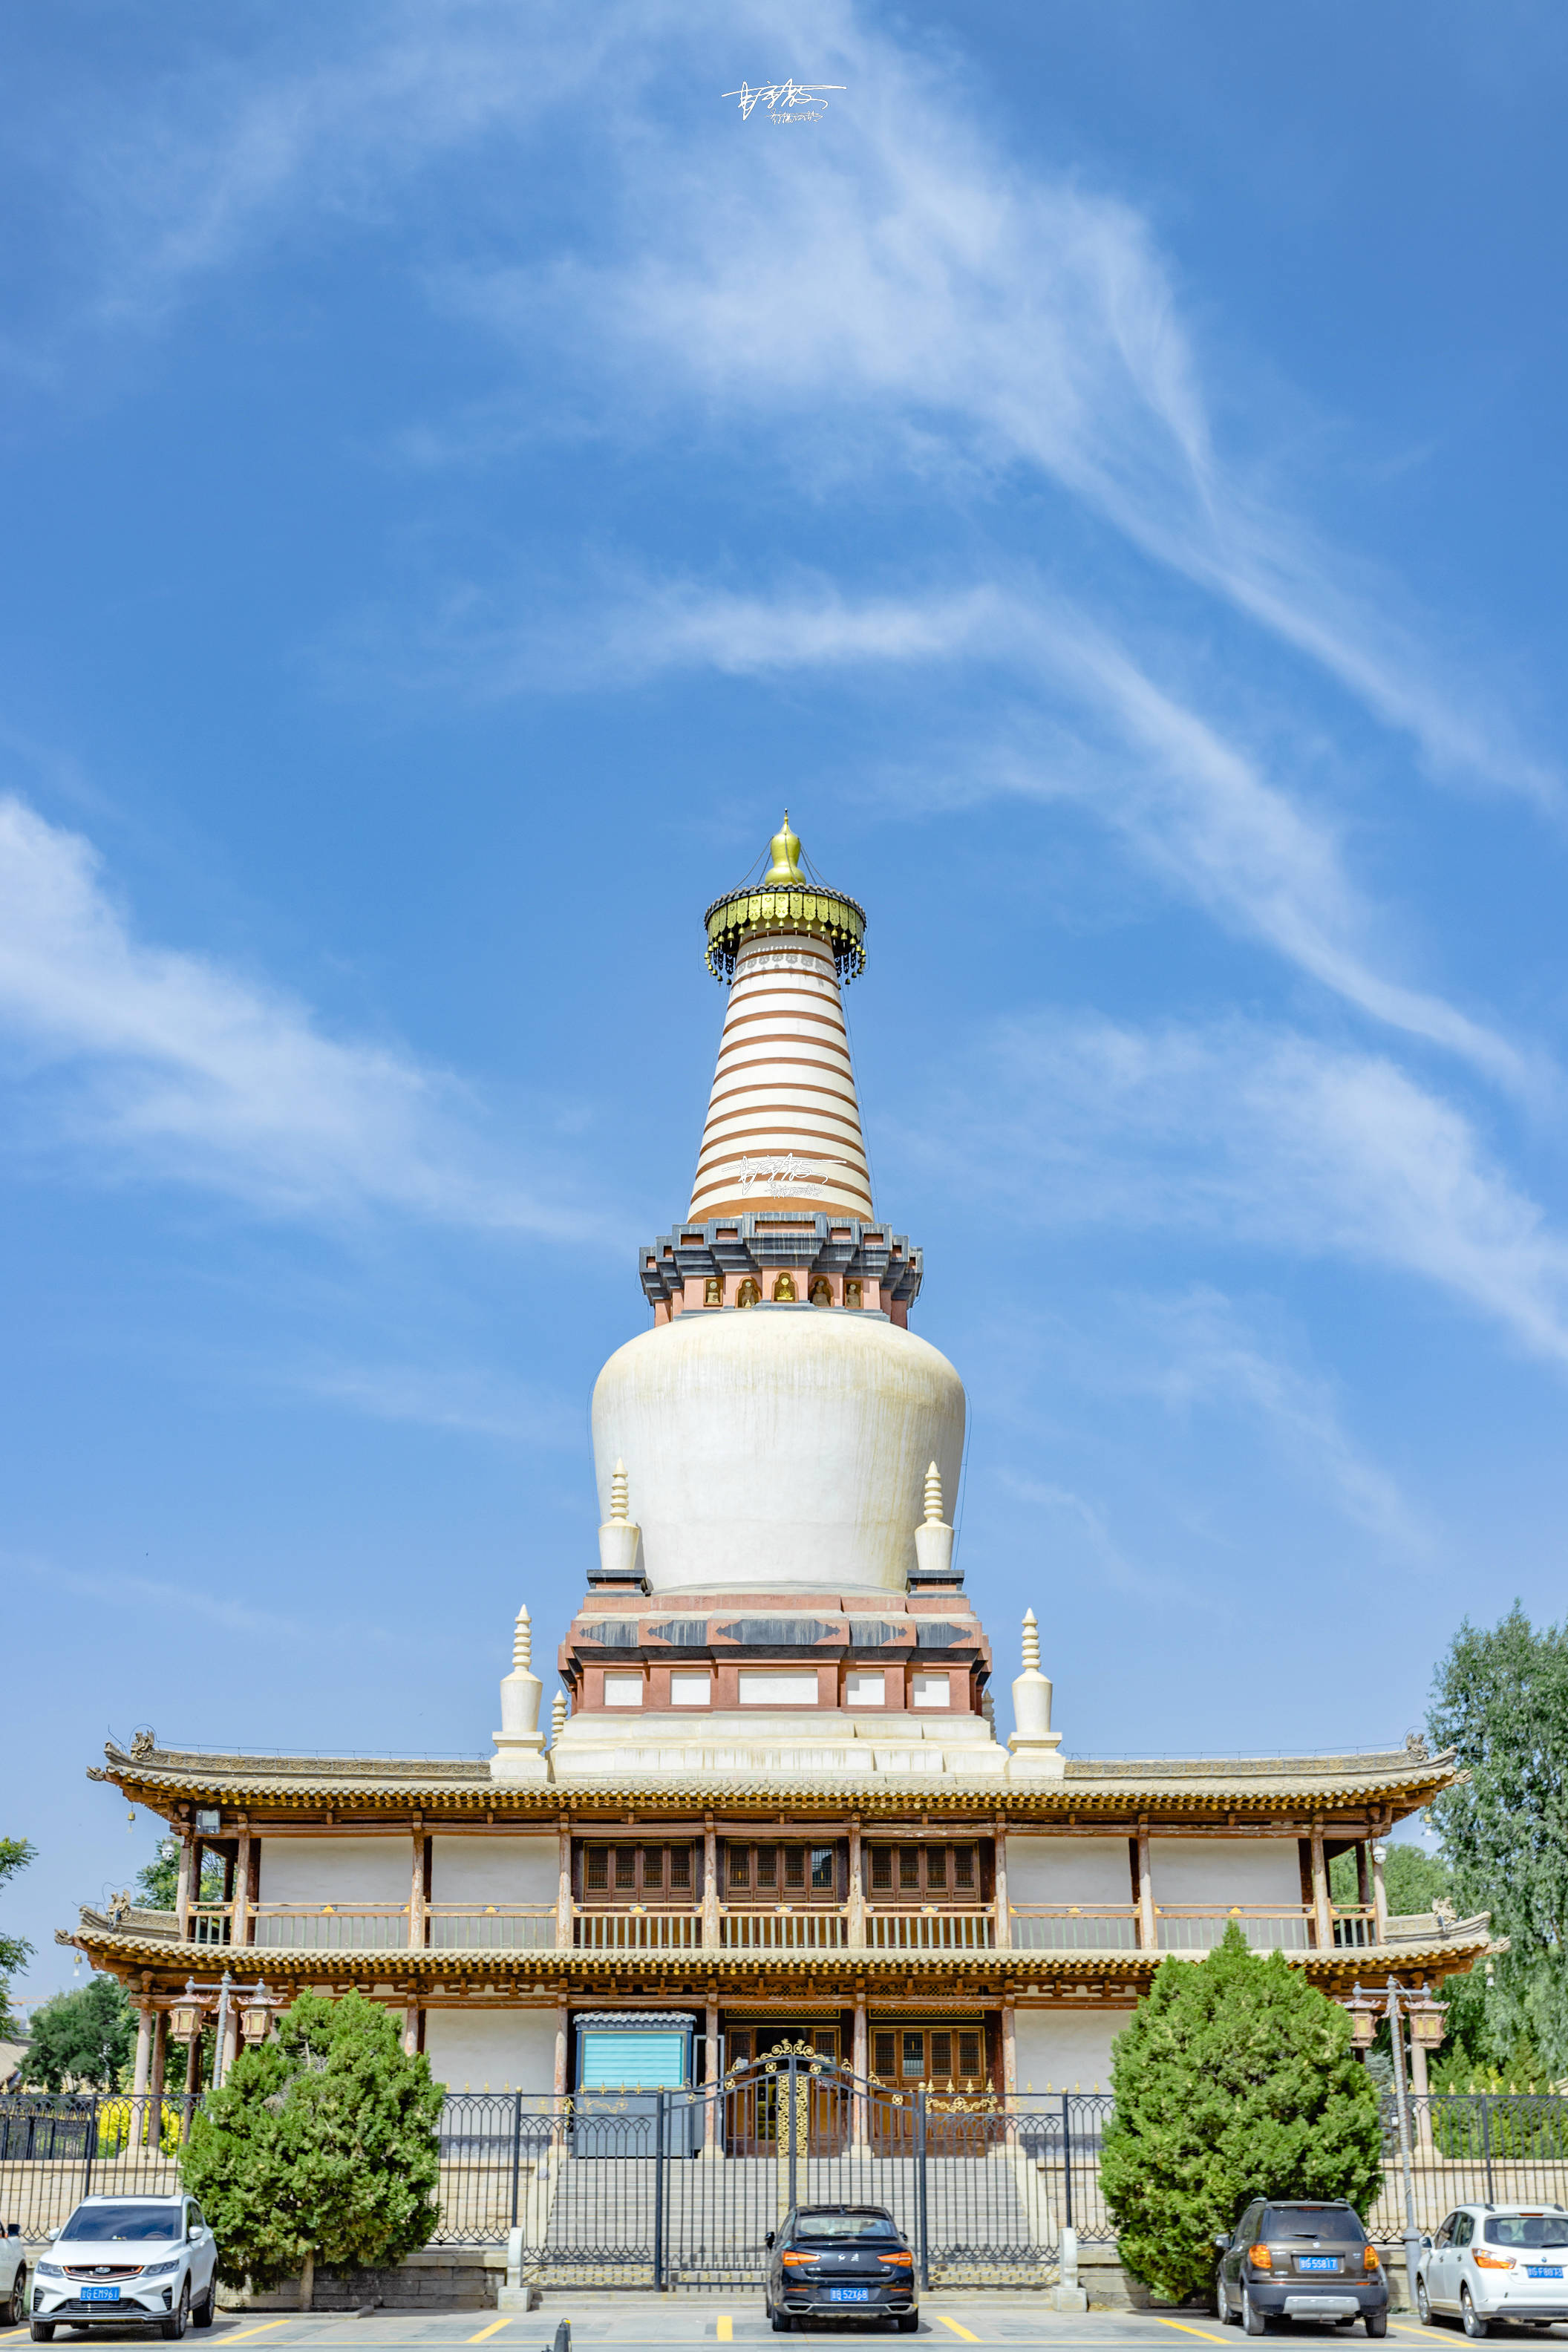 原创媲美北京妙应寺白塔,存放印度高僧灵骨的土塔,藏在西夏皇家寺院里